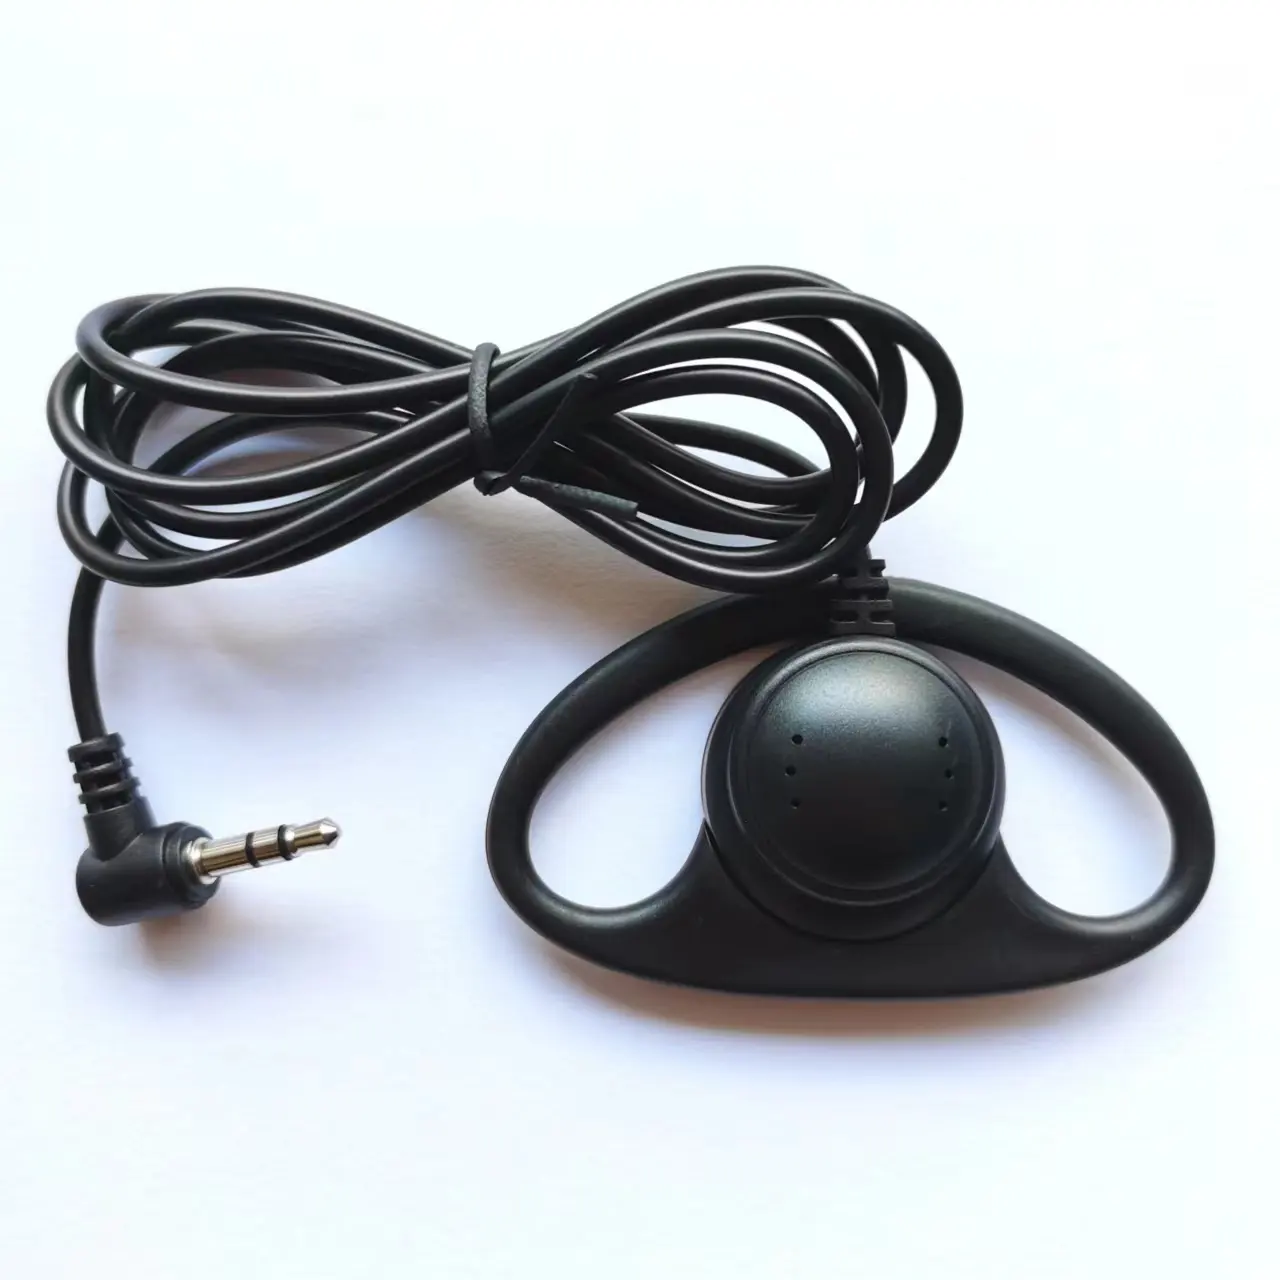 Écouteurs Mono avec crochet auriculaire latéral de 3.5mm, écouteurs filaires pour Guide touristique